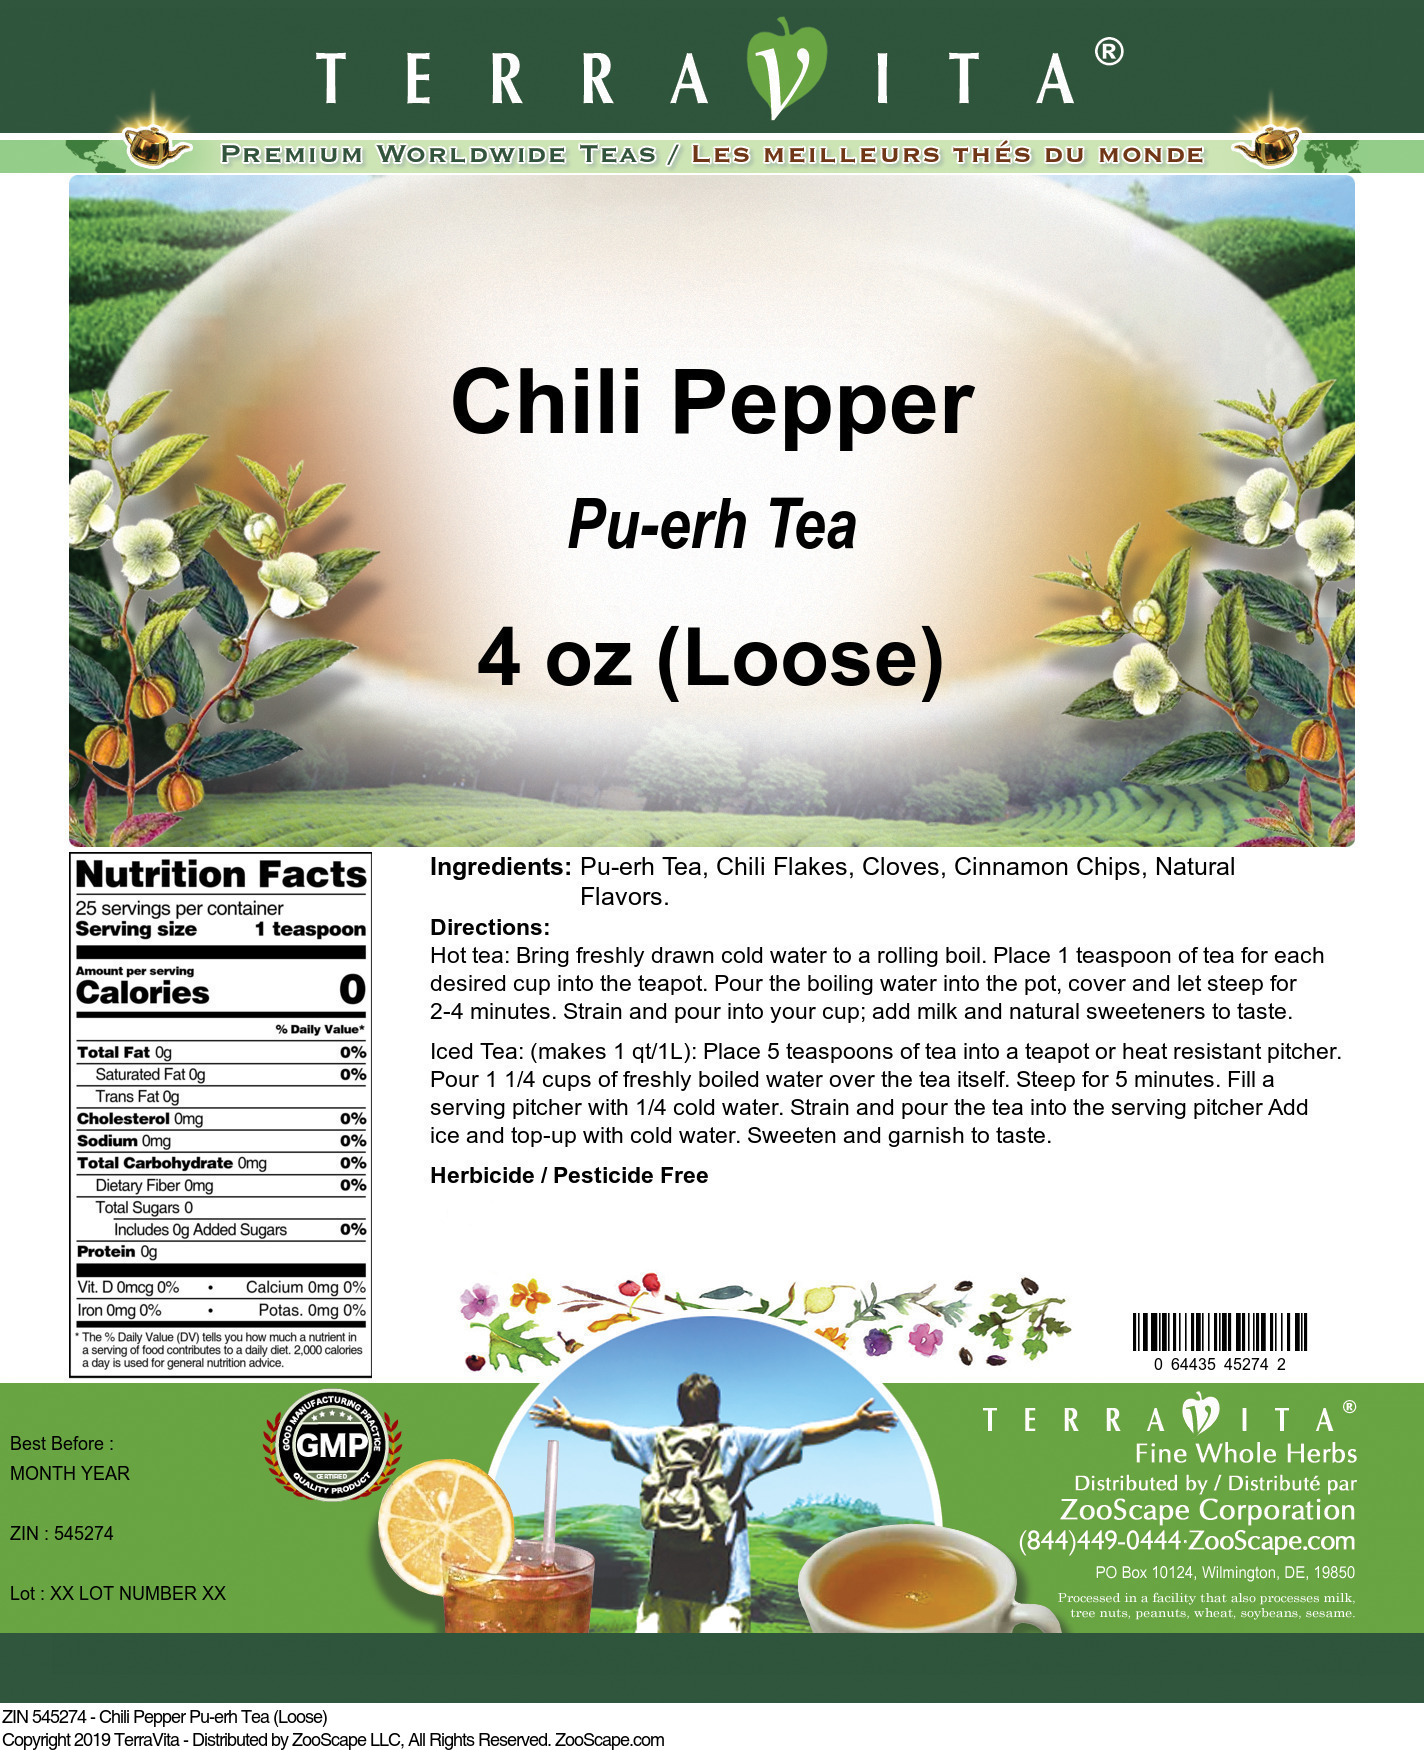 Chili Pepper Pu-erh Tea (Loose) - Label